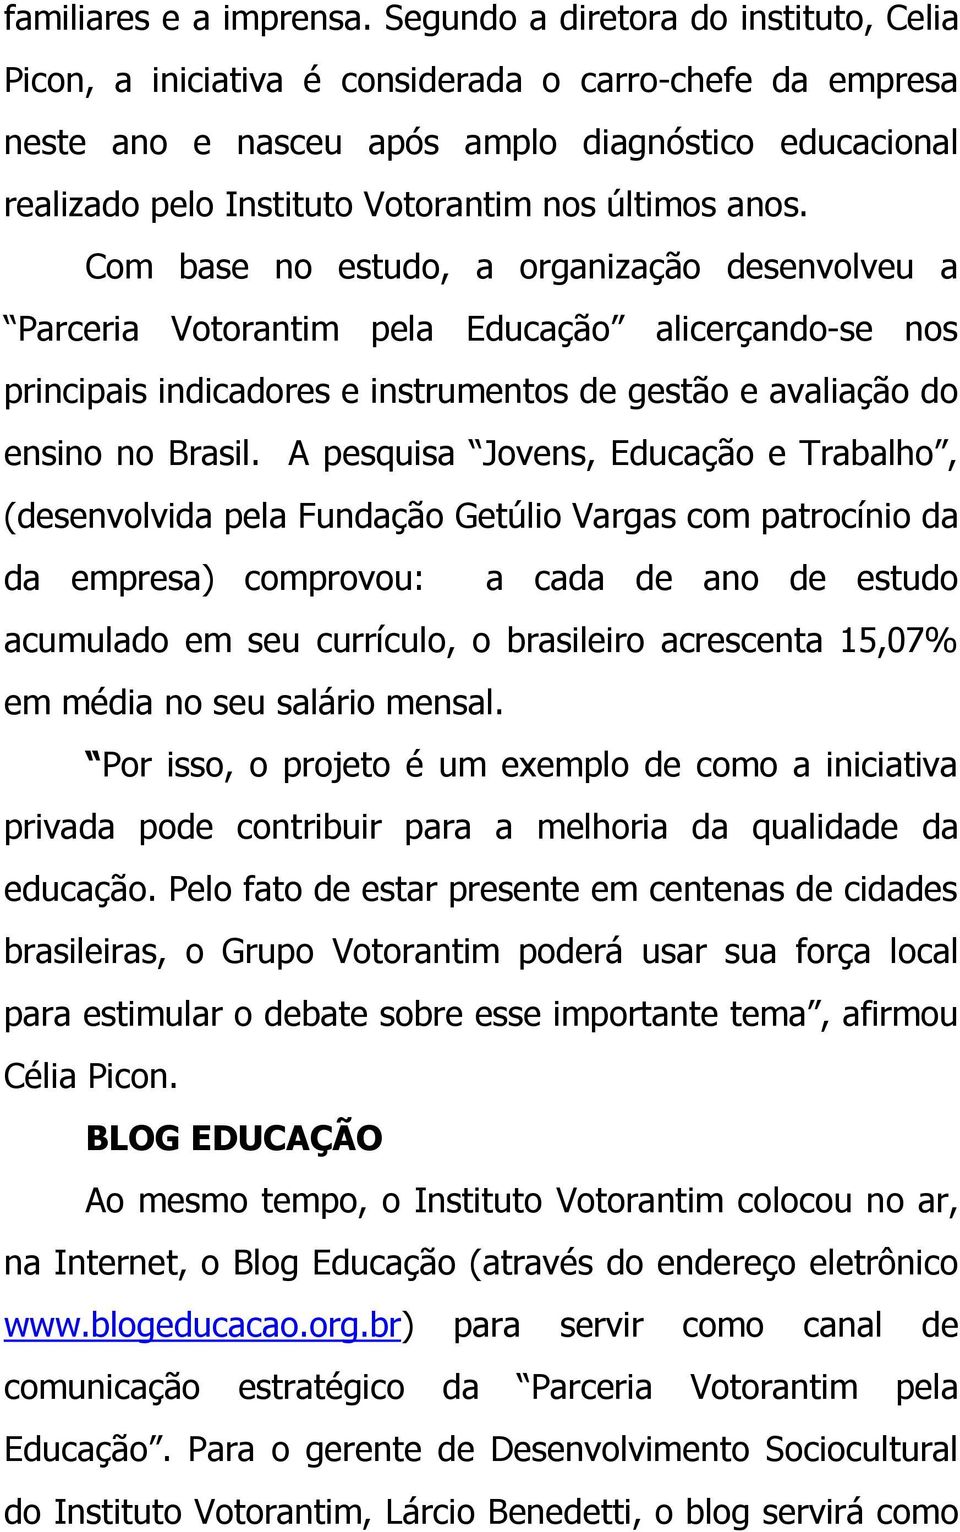 anos. Com base no estudo, a organização desenvolveu a Parceria Votorantim pela Educação alicerçando-se nos principais indicadores e instrumentos de gestão e avaliação do ensino no Brasil.